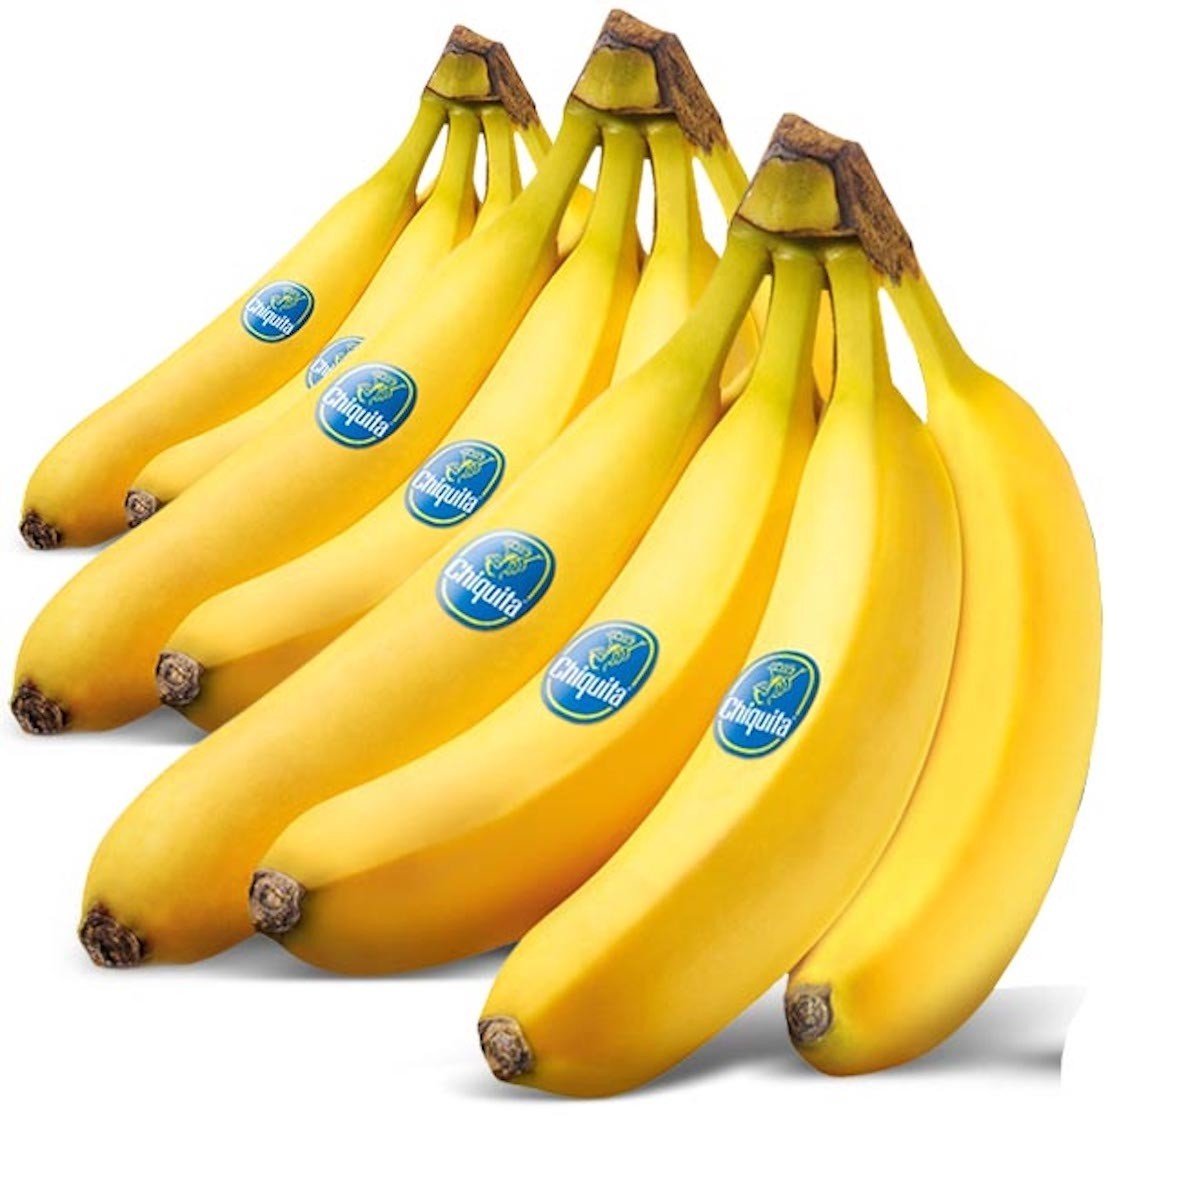 Banana Chiquita 10kg Box Buy Online